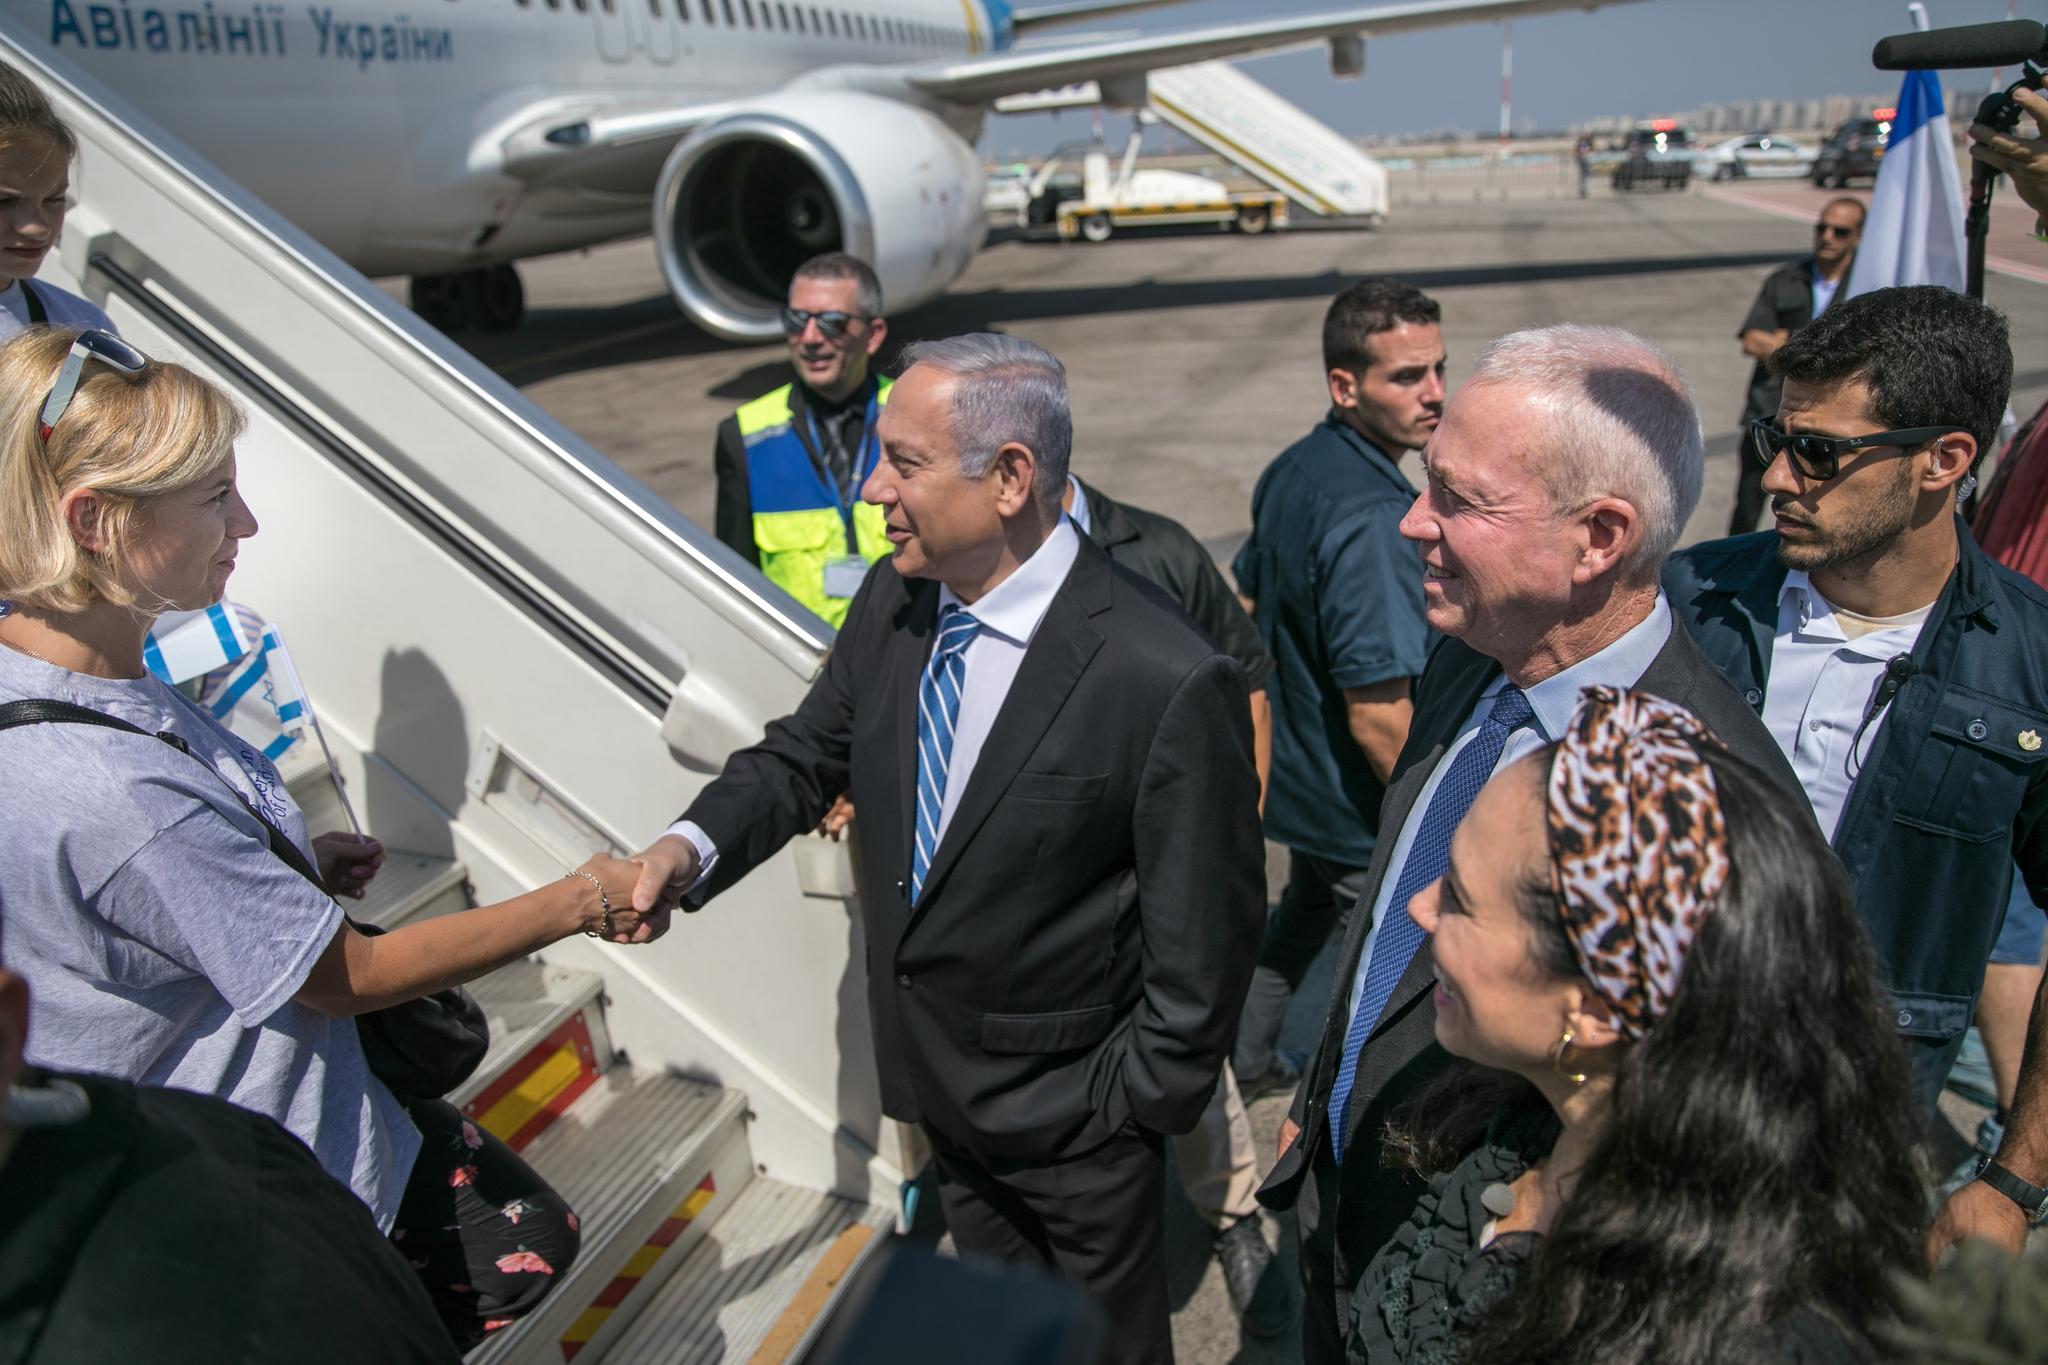 Netanyahu welcomes Ukraine Jews